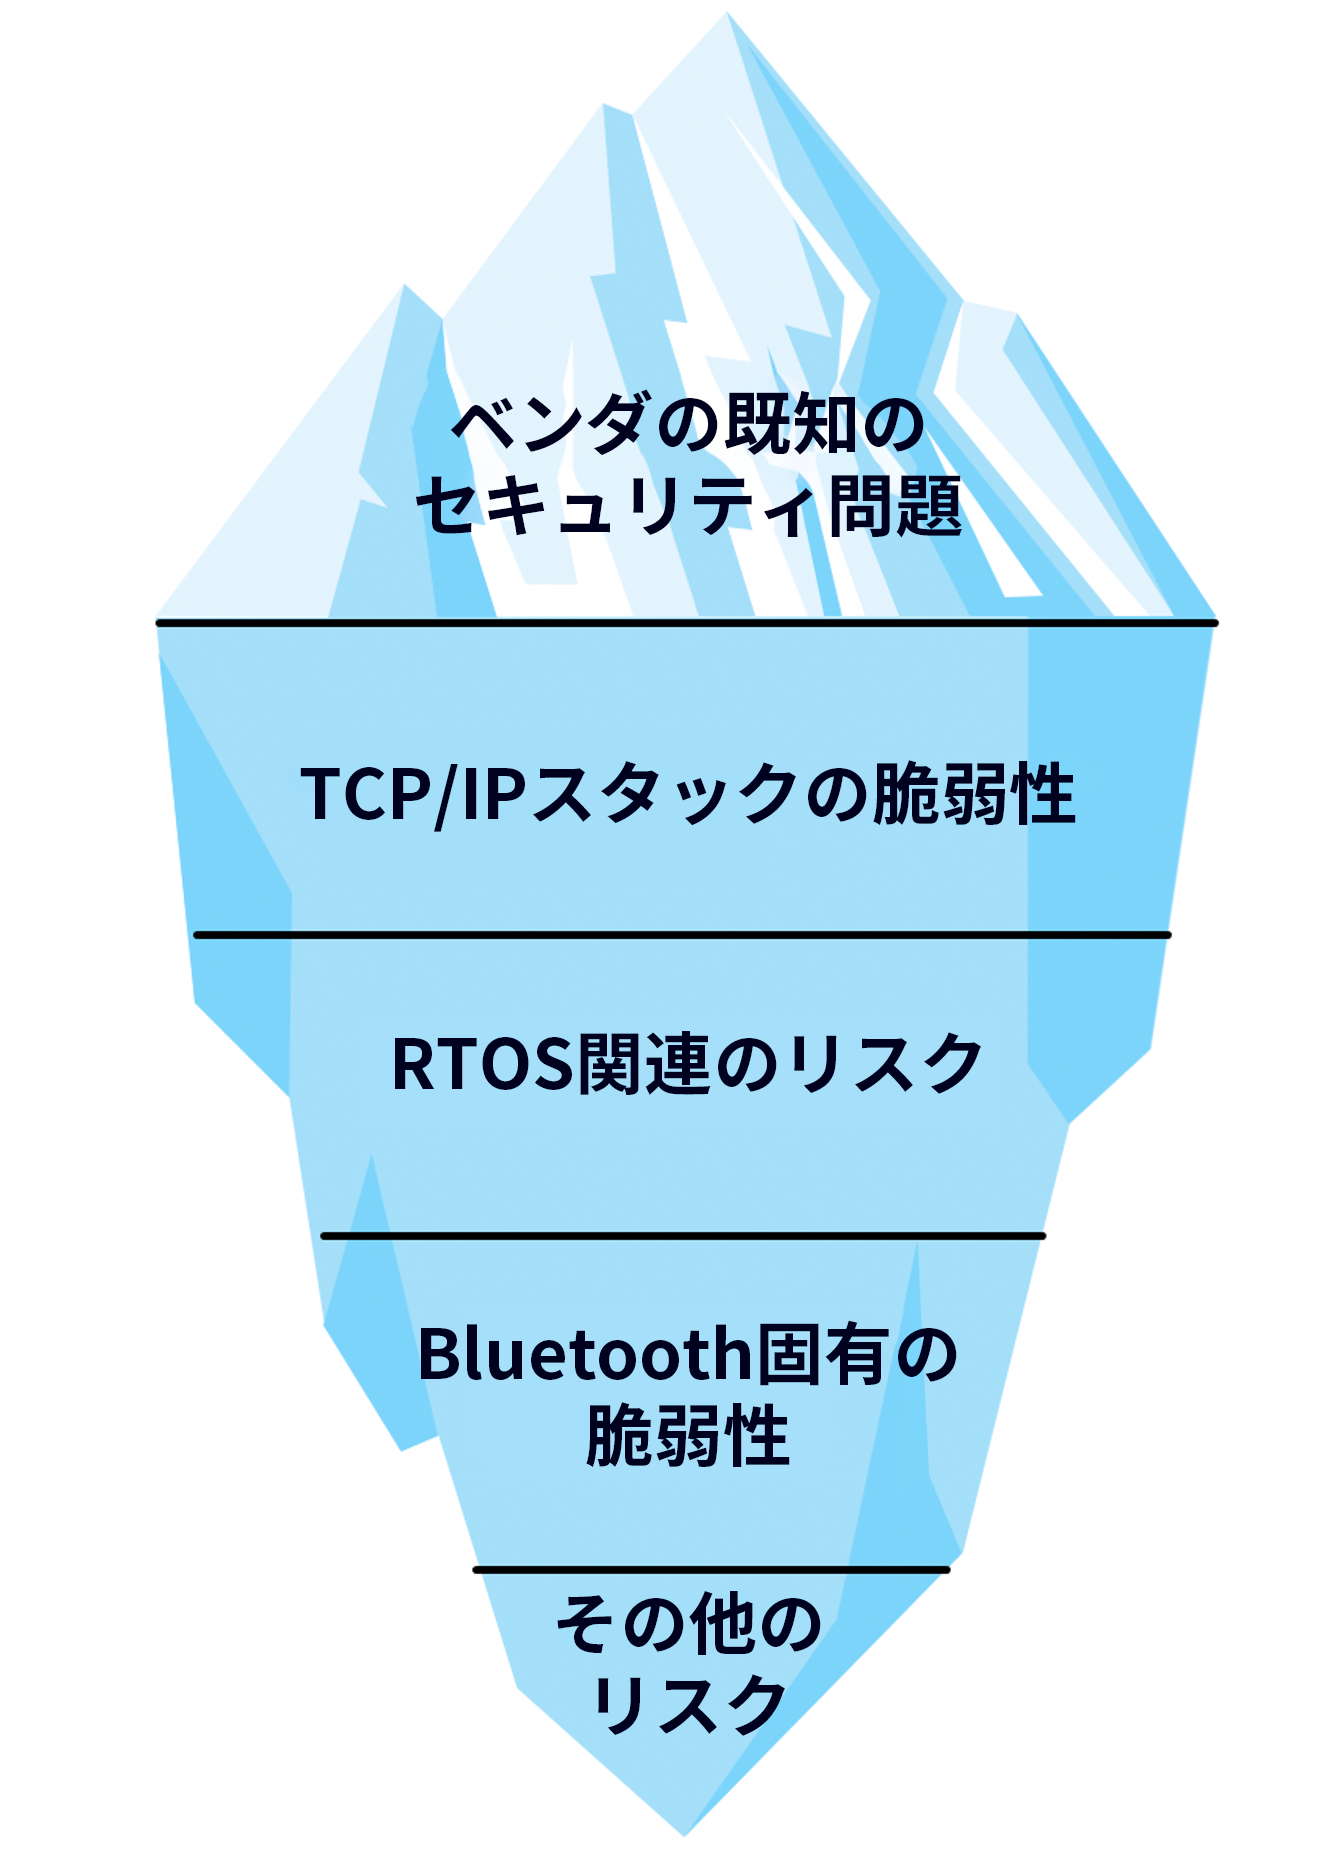 氷山の画像氷山の水面より上にはベンダーの既知のセキュリティ問題が表示され、水面の下には、TCP/IPスタックの脆弱性、RTOS関連のリスク、Bluetooth固有の脆弱性、その他のリスクが表示されている。 